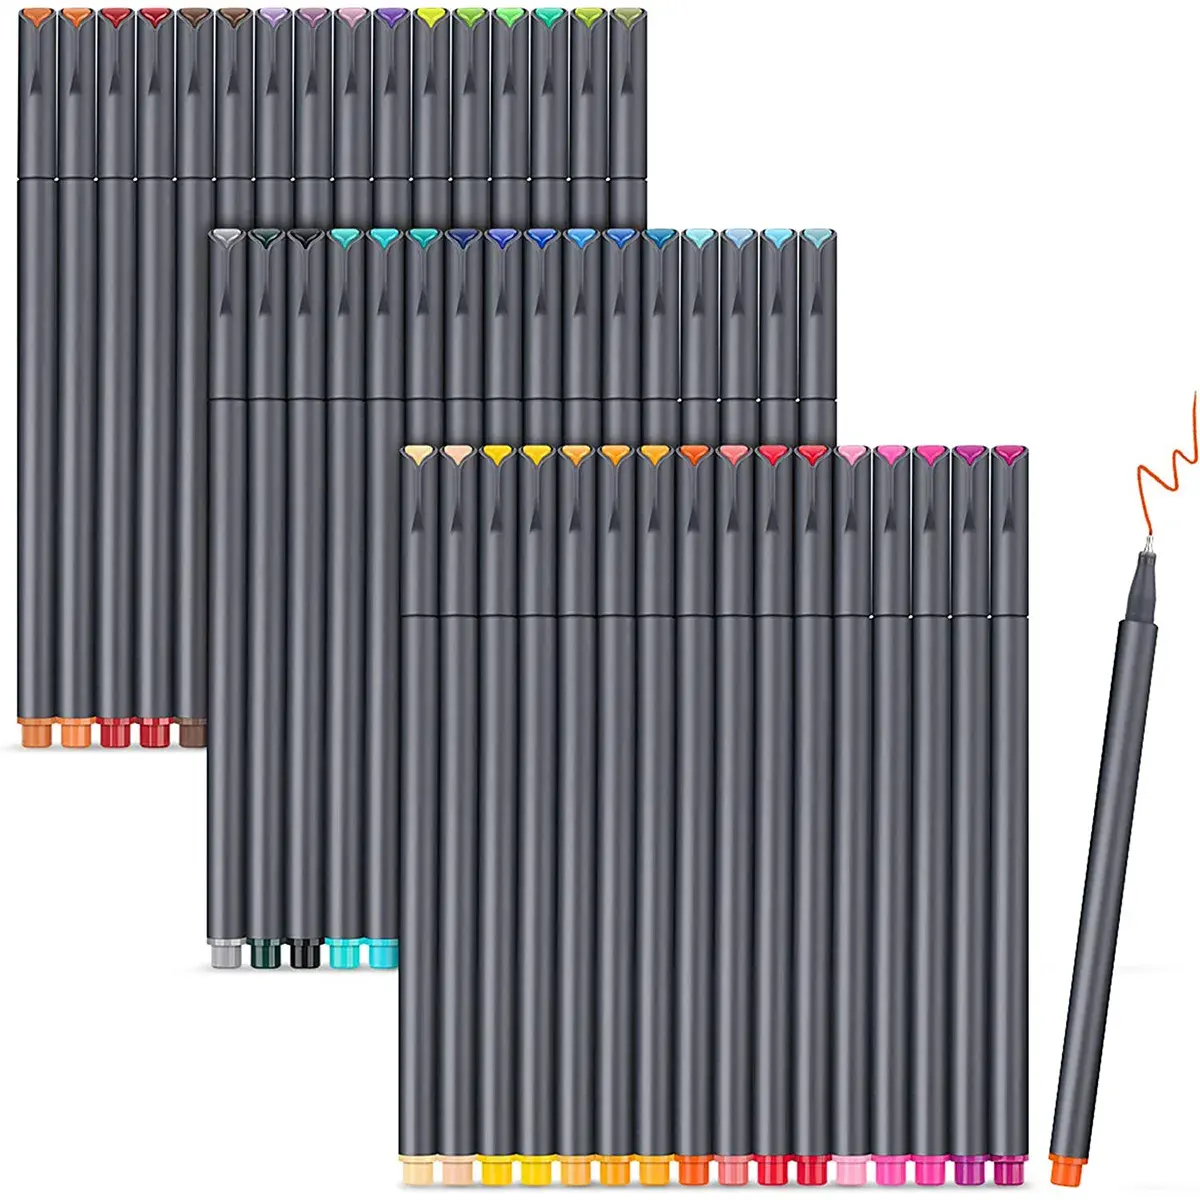 Kunstfarbige Stifte Feinsteckmarker feine Spitze Zeichnung Stifte Oberfläche-Stift für Journaling Schreiben Anmerkung Kunst Büro